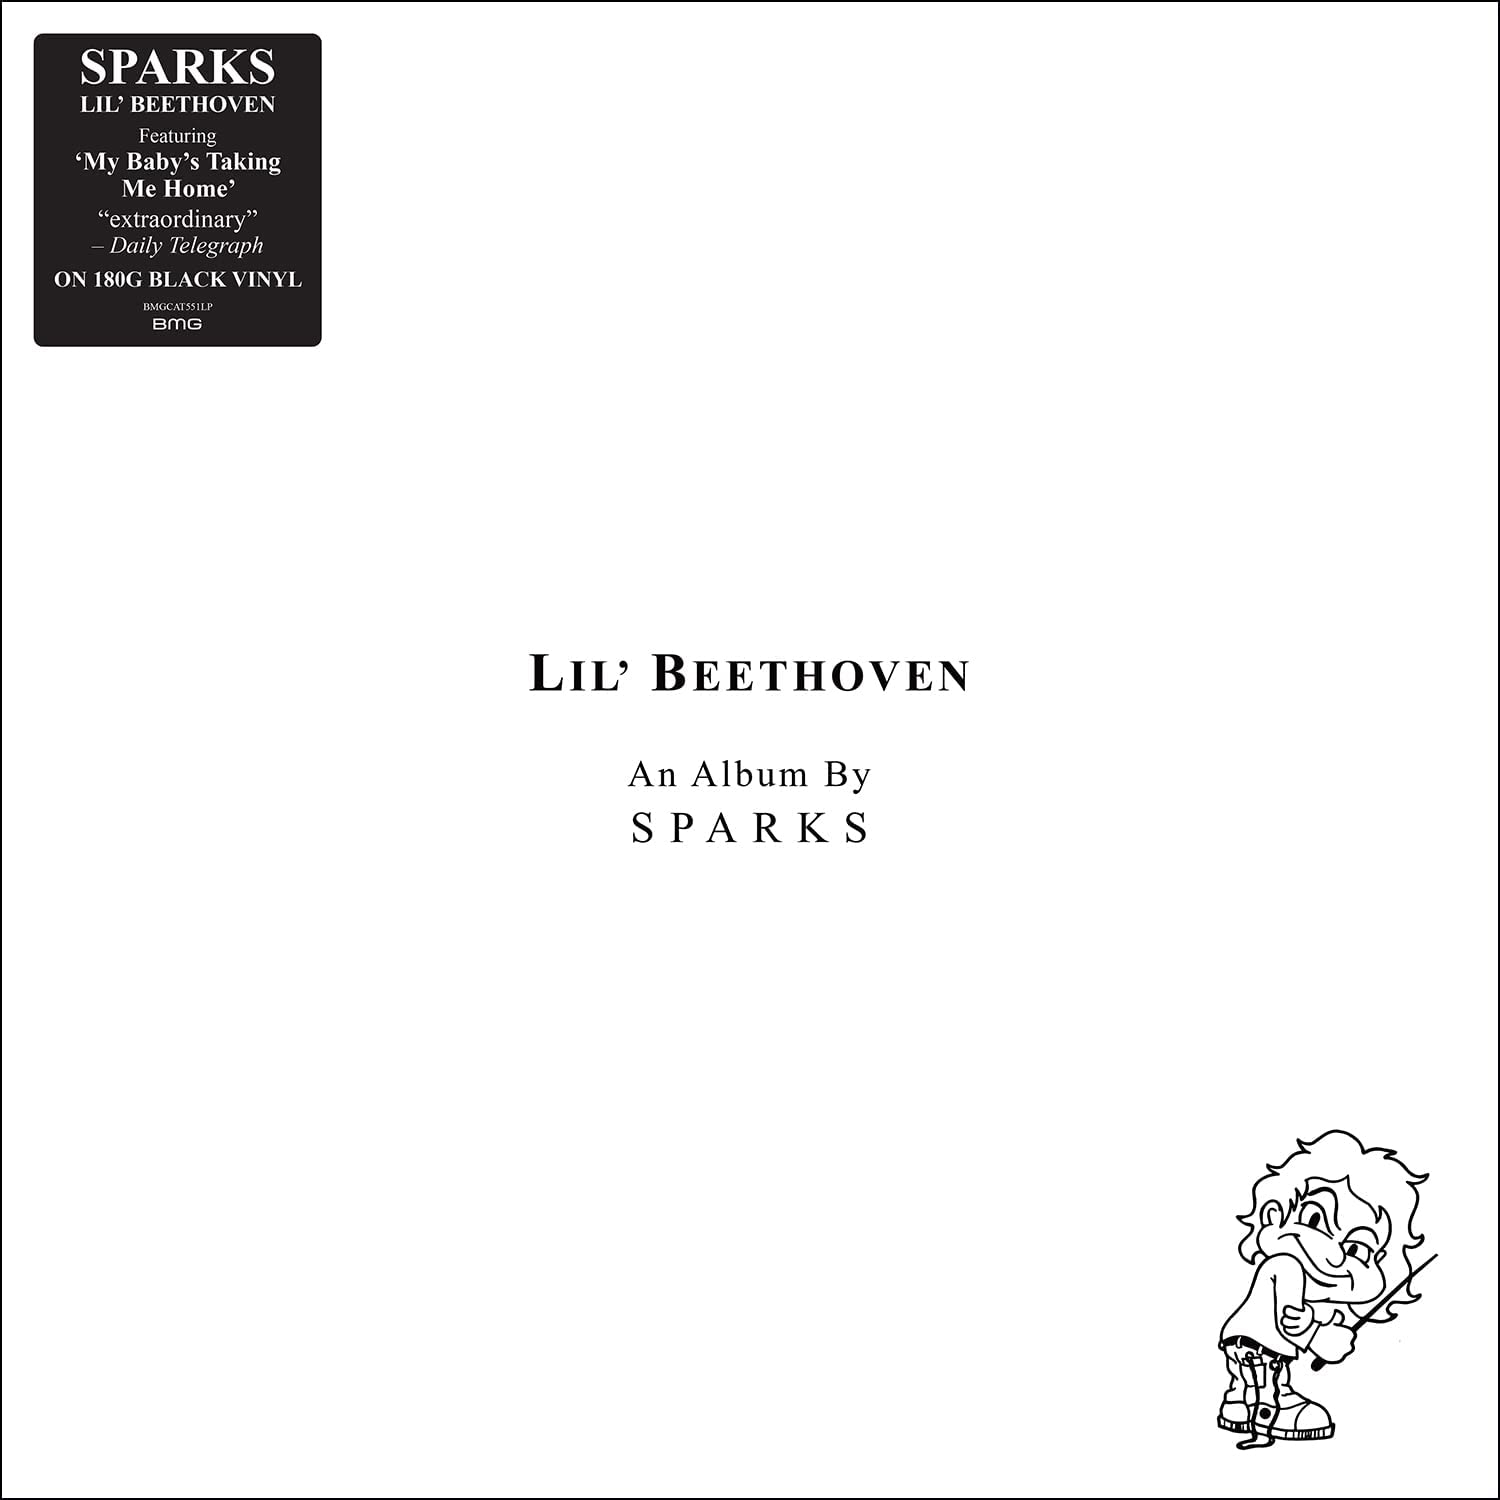 Copertina Vinile 33 giri Lil' Beethoven di Sparks